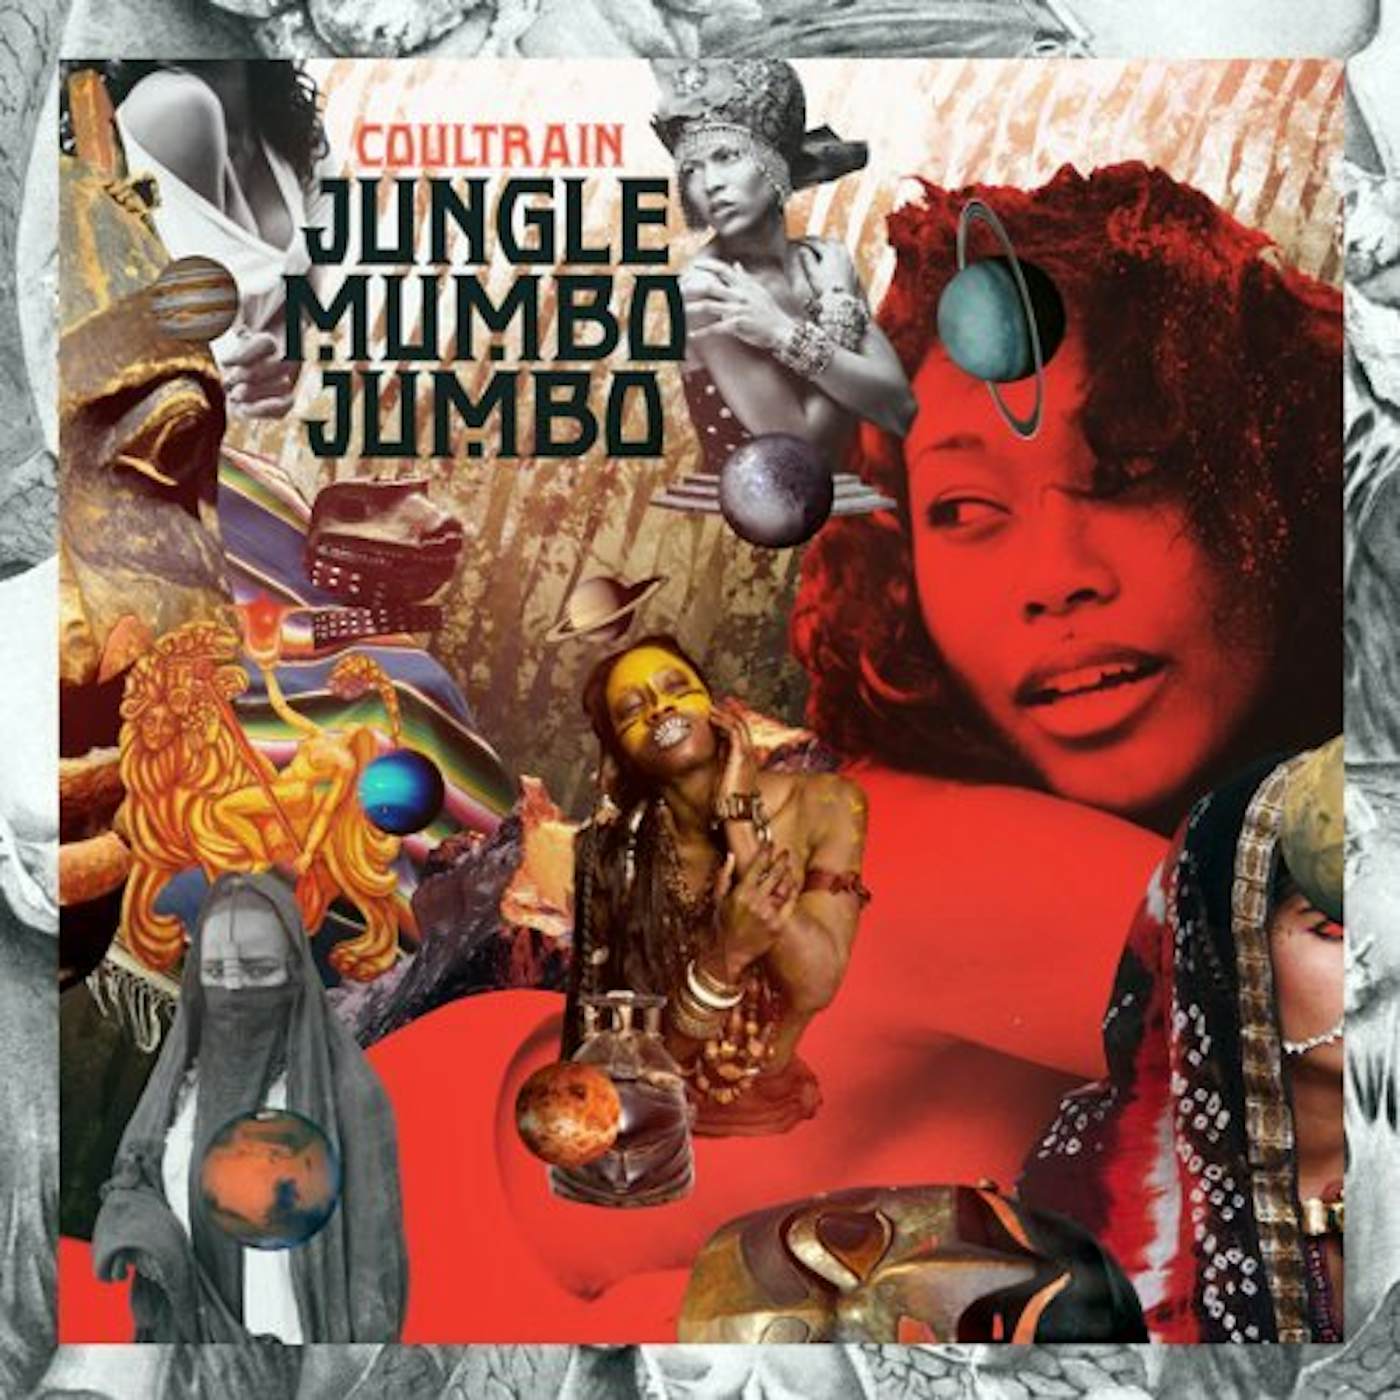 Coultrain JUNGLE MUMBO JUMBO CD